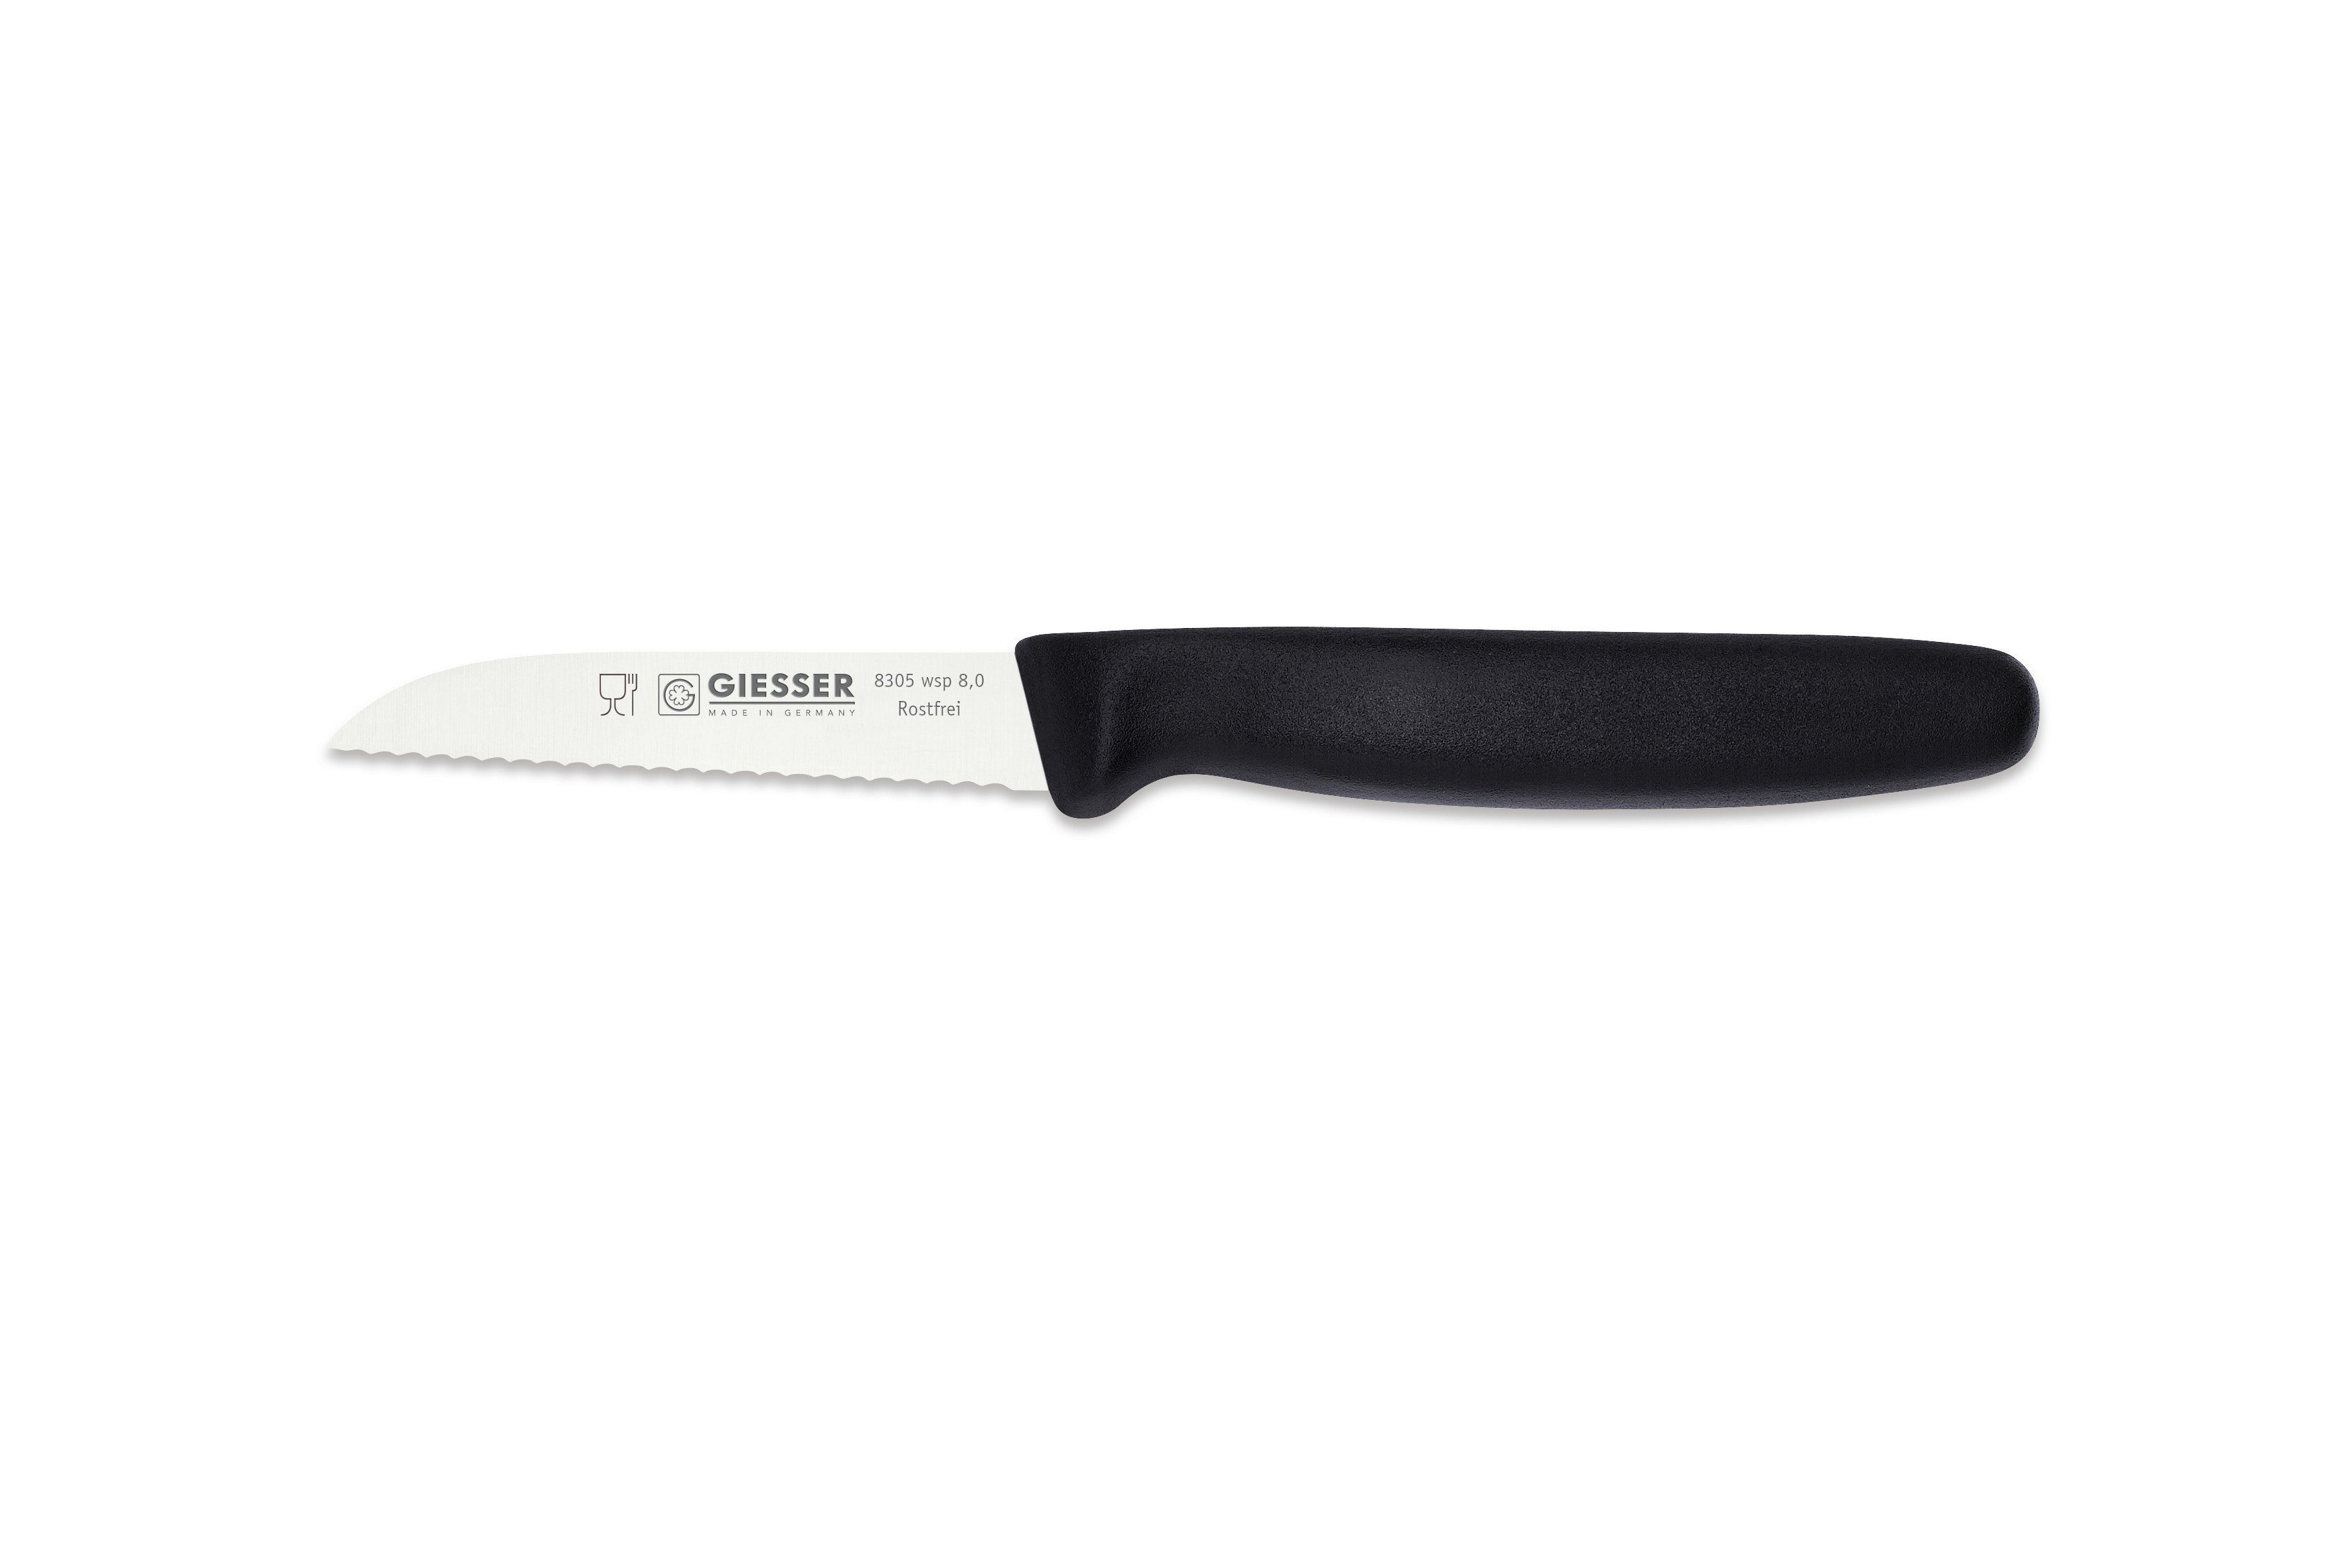 Giesser Messer Gemüsemesser Küchenmesser 8305 sp 8 alle Farben, Küchenmesser gerade Schneide 8 cm, Made in Germany Schwarz - Welle